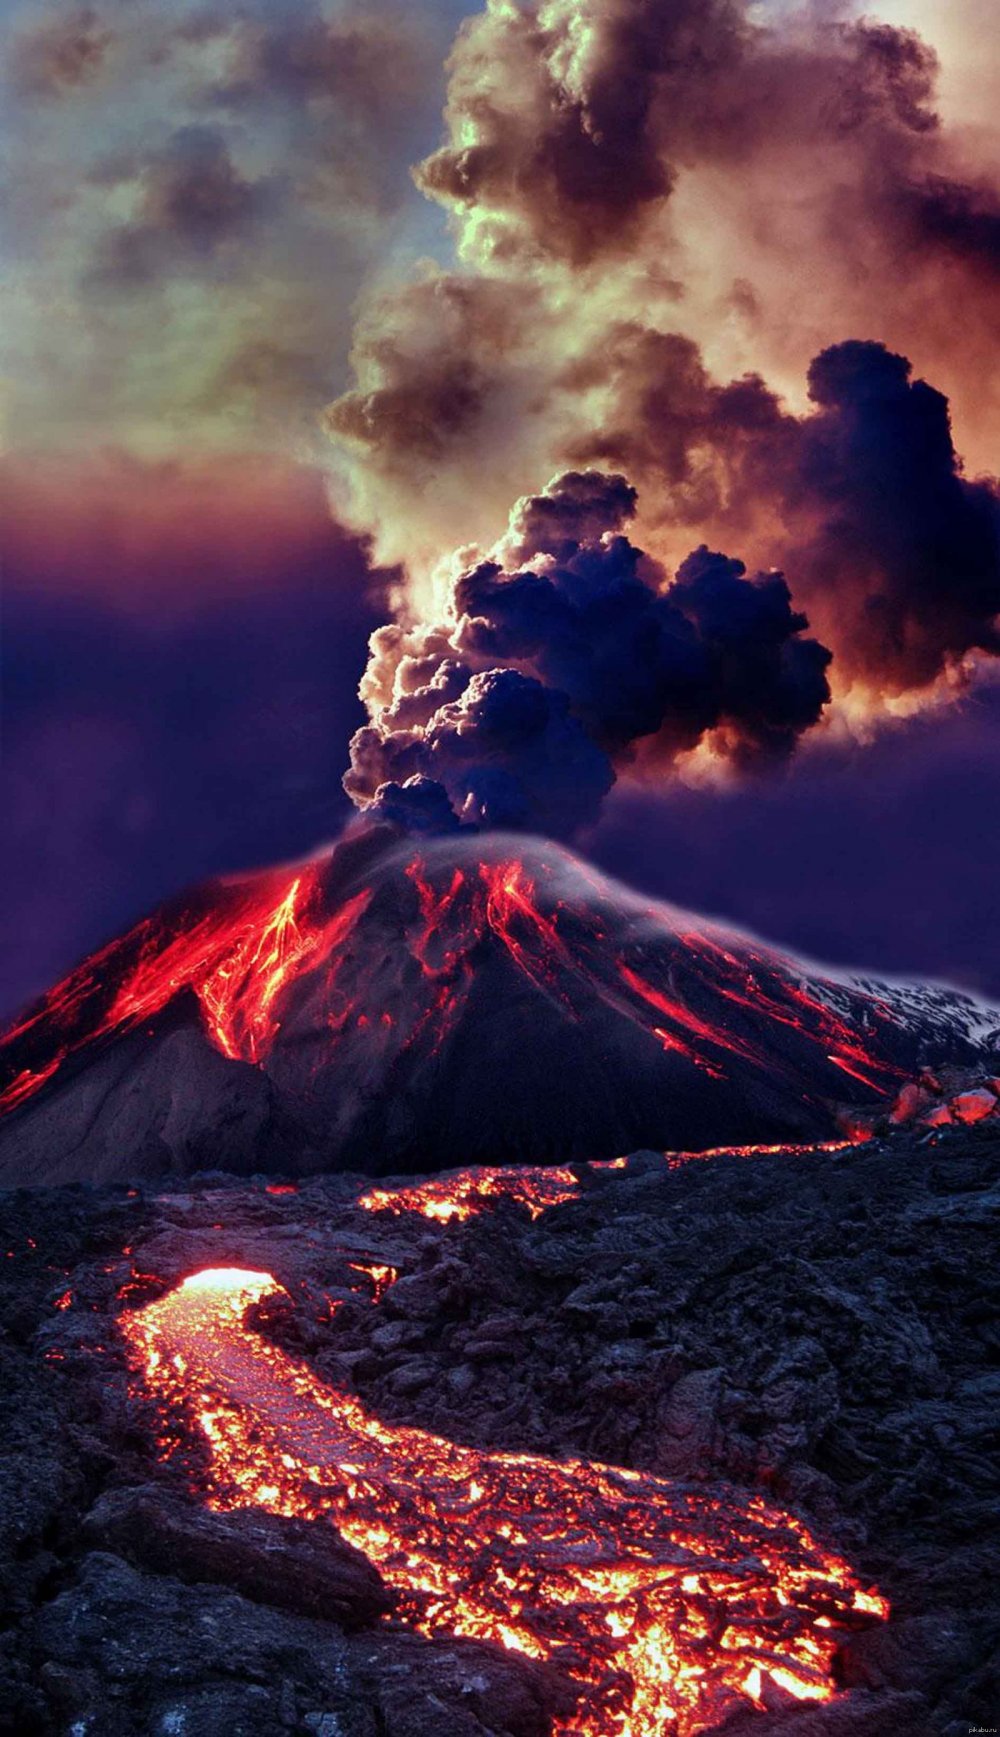 Вулкан Эйяфьятлайокудль извержение 2010